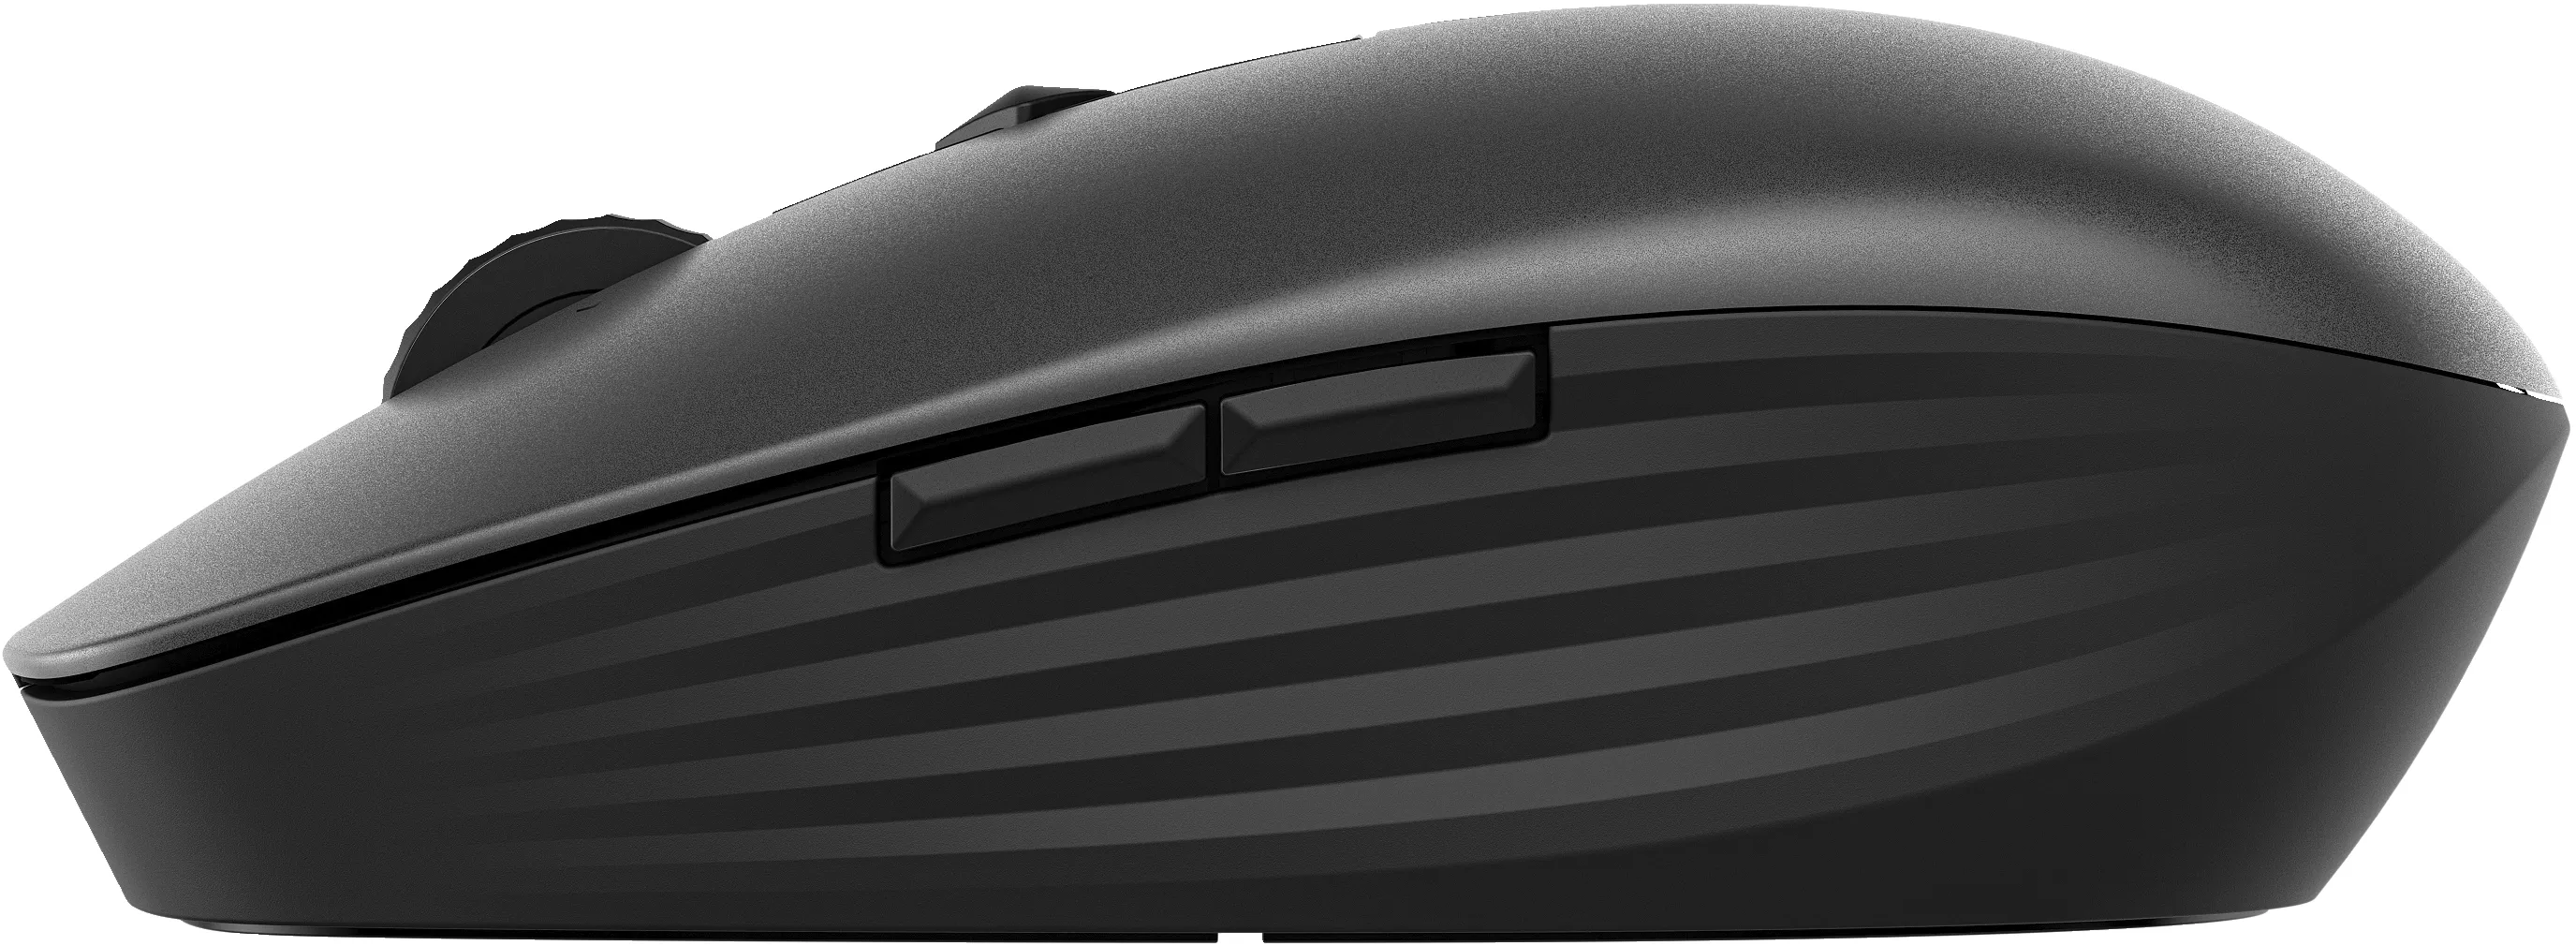 Vente HP 715 RECHBL Mult-Dvc Bluetooth Mouse HP au meilleur prix - visuel 4